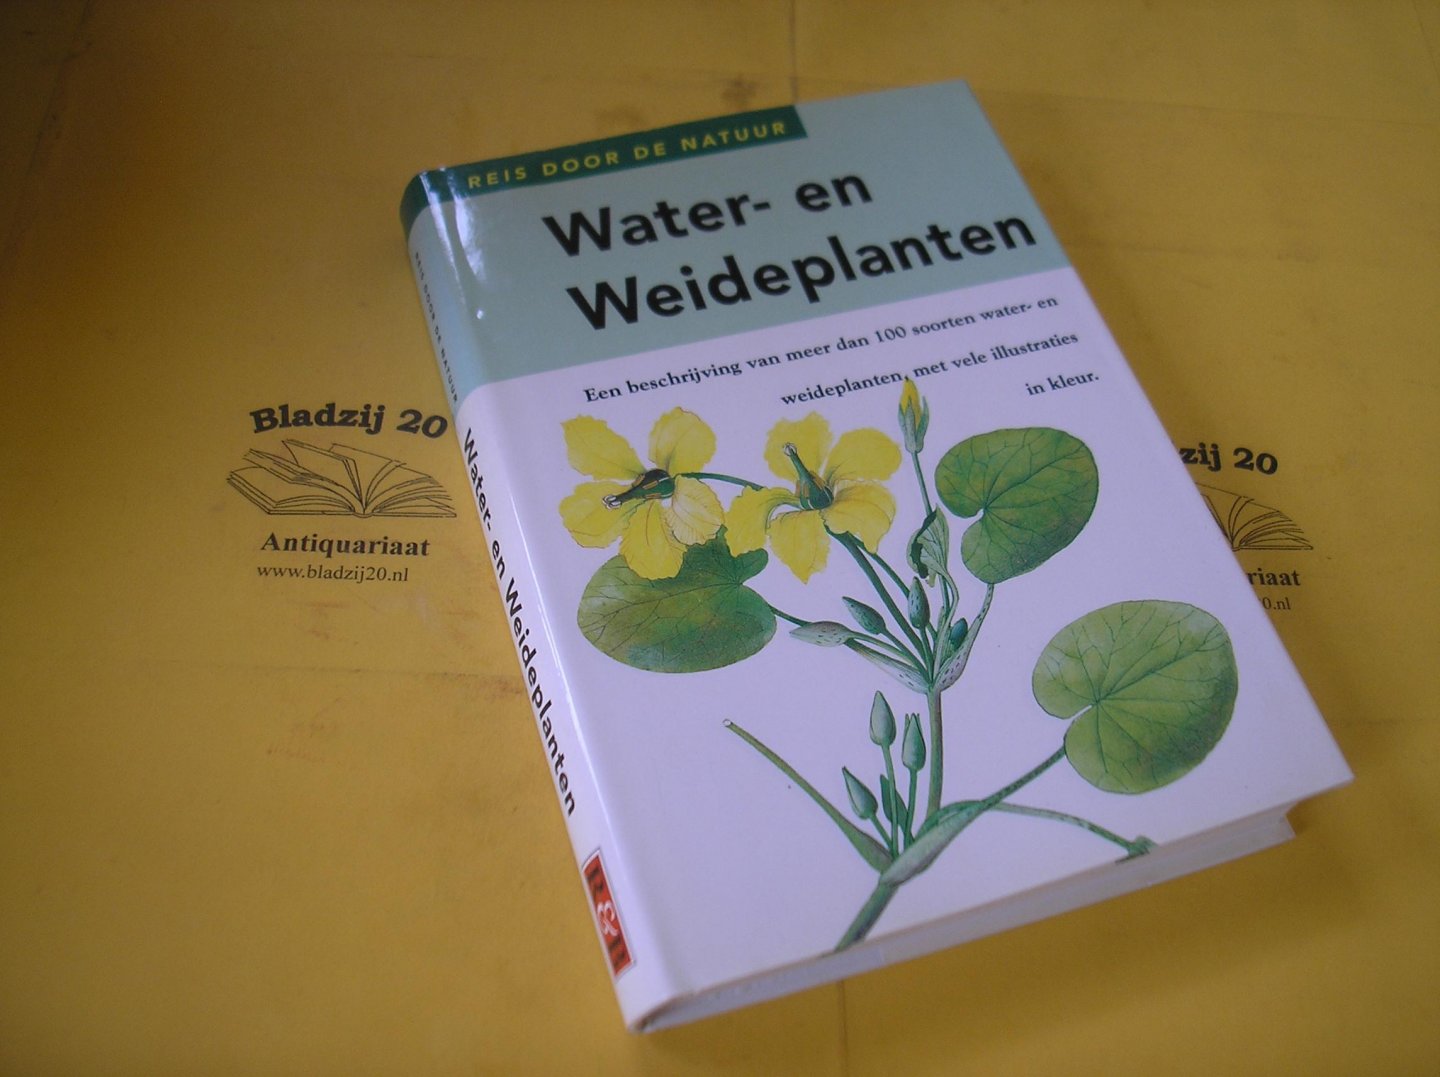 Vetvicka, Vaclav. - Water- en weideplanten. Een beschrijving van meer dan 100 soorten water- en weideplanten , met vele illustraties in kleur.